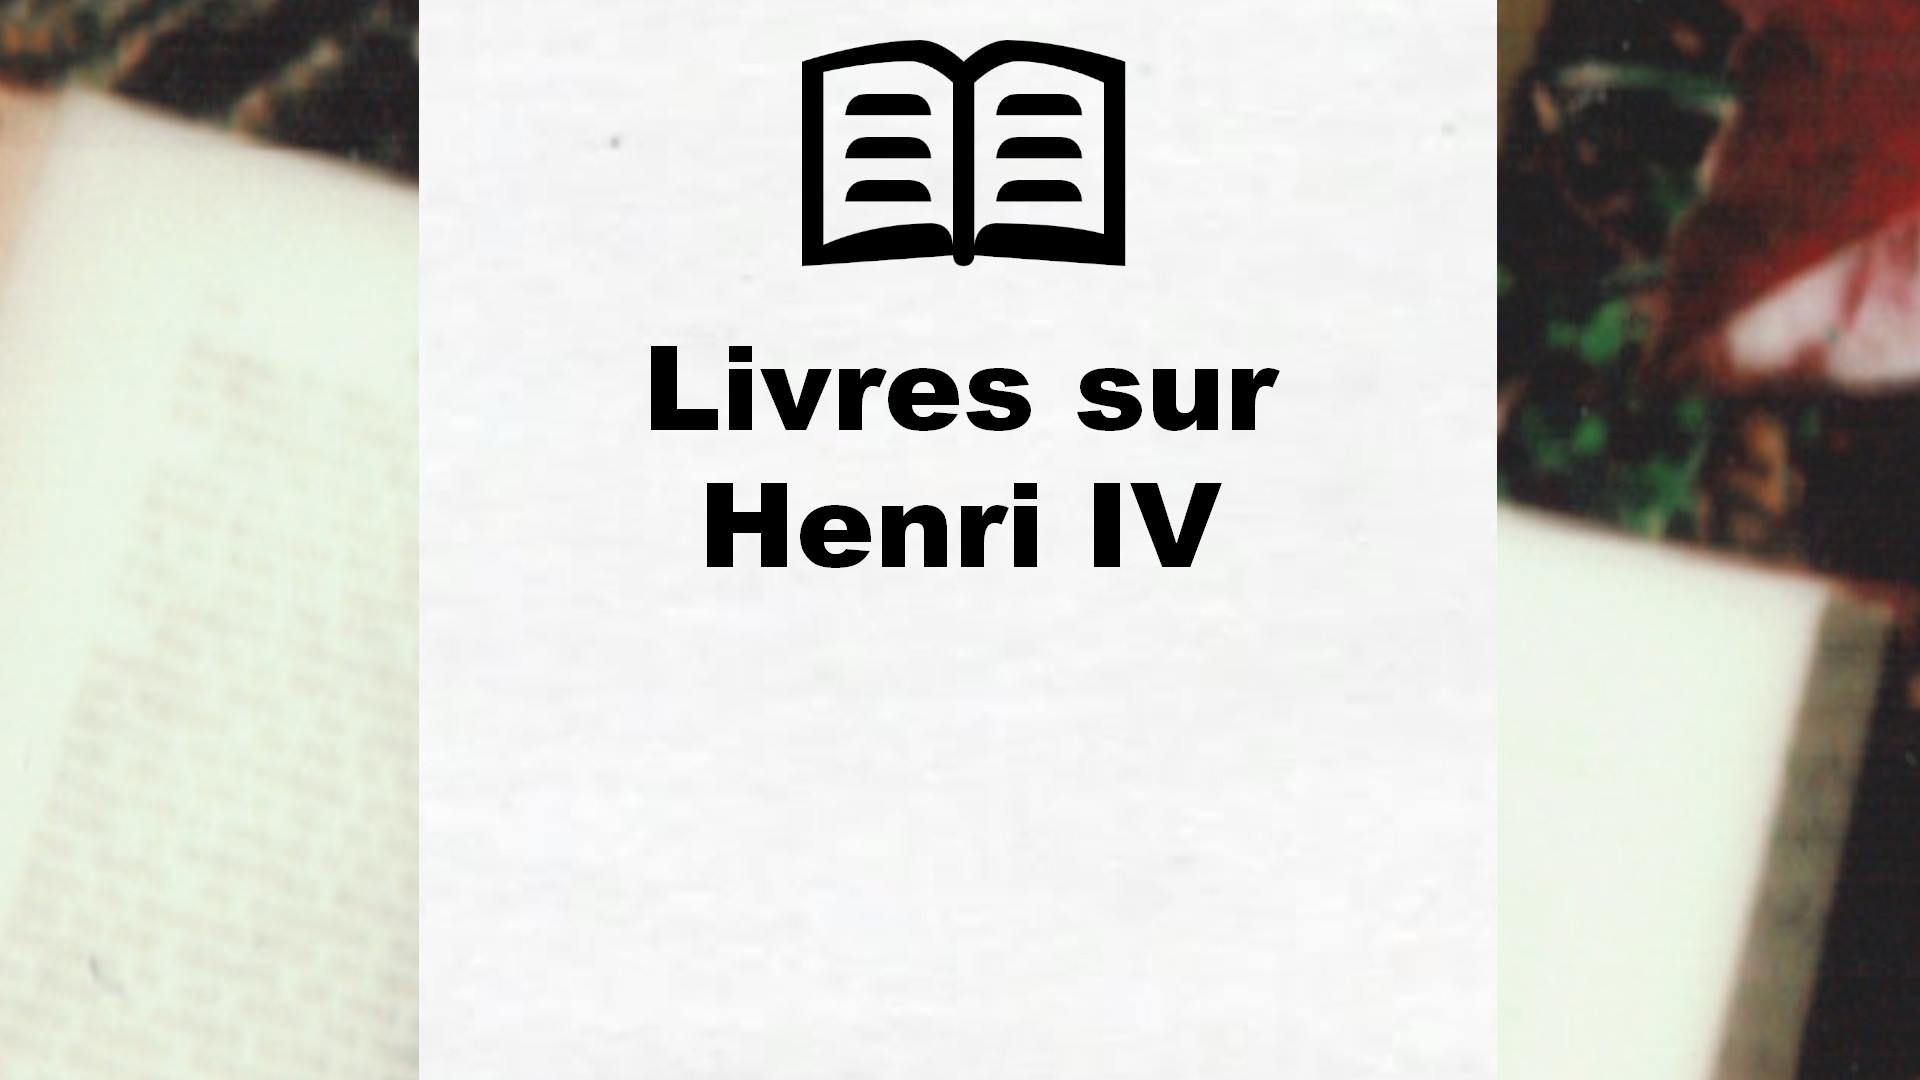 Livres sur Henri IV